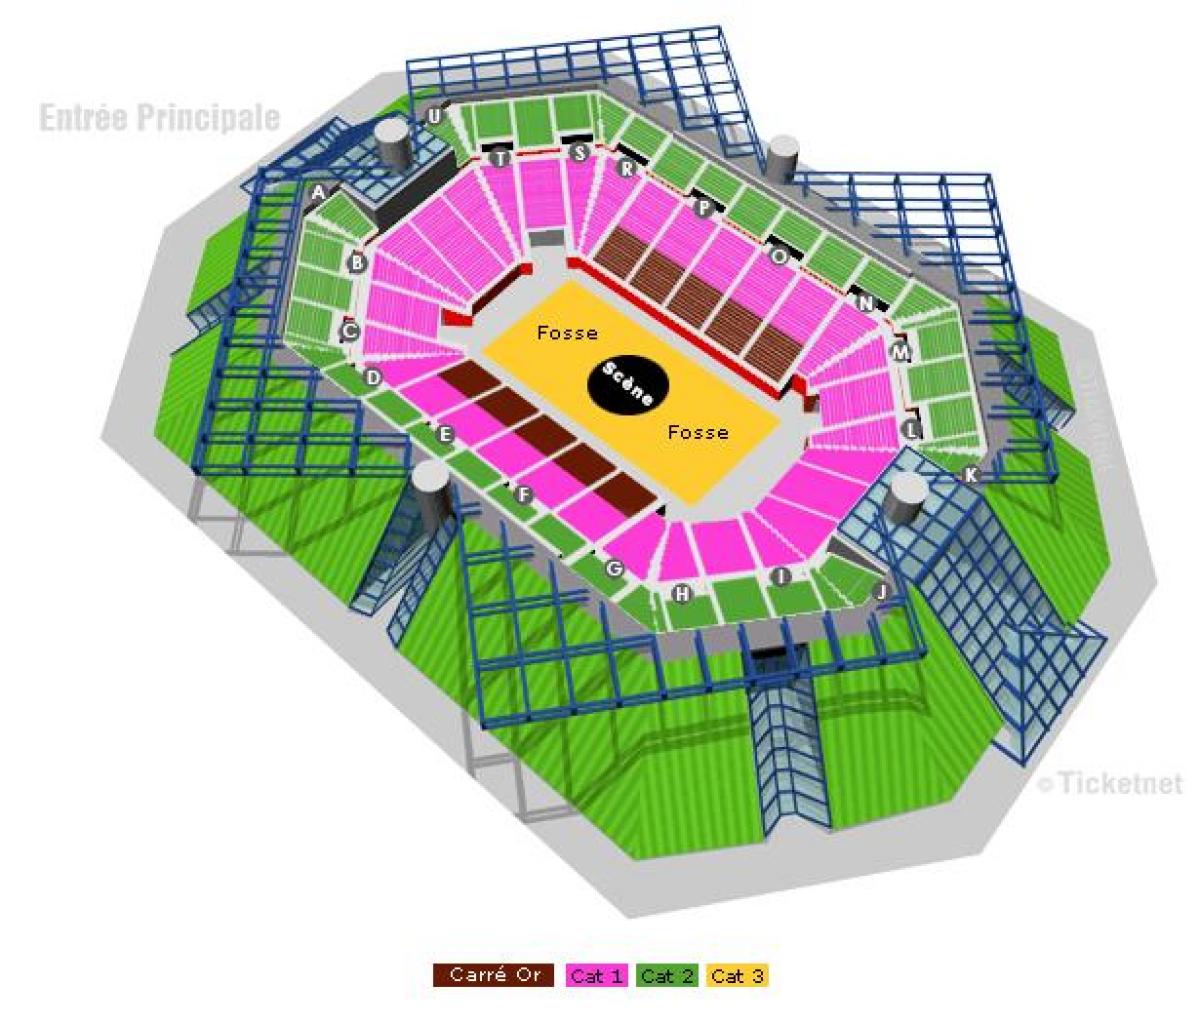 Kart av Bercy Arena